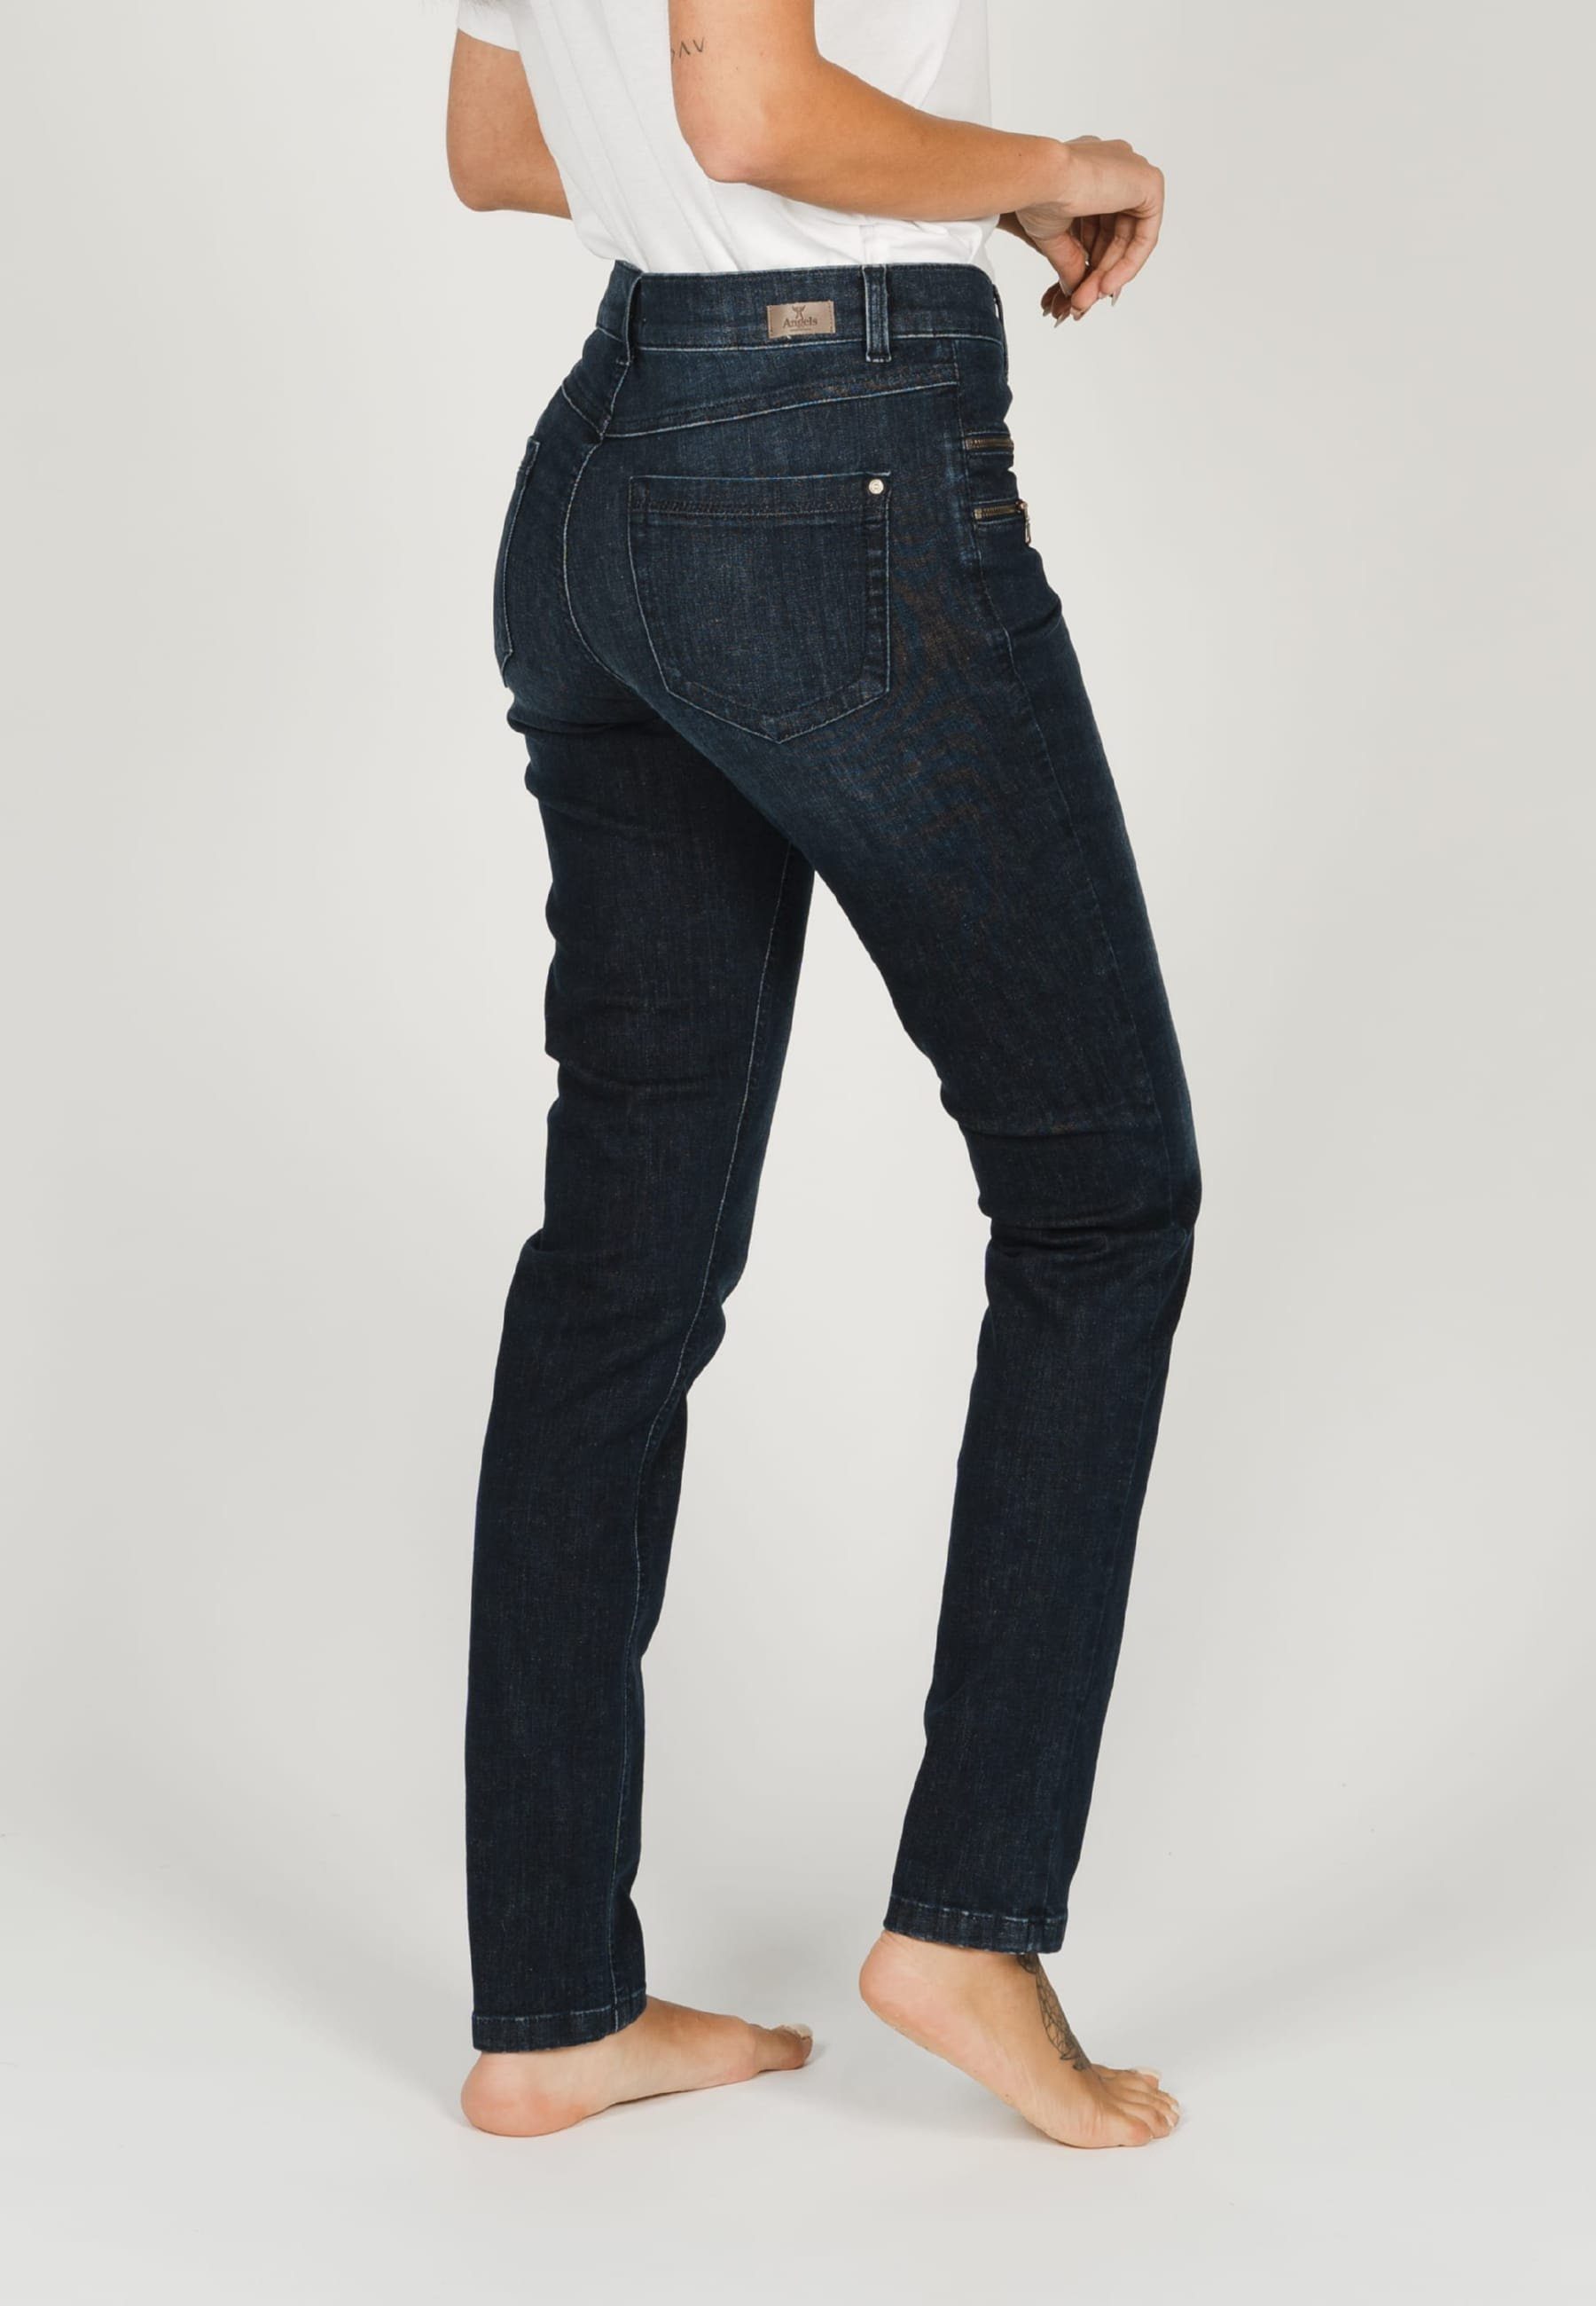 ANGELS Slim-fit-Jeans Jeans indigo Label-Applikationen Malu Zierreißverschlüssen mit Zip mit